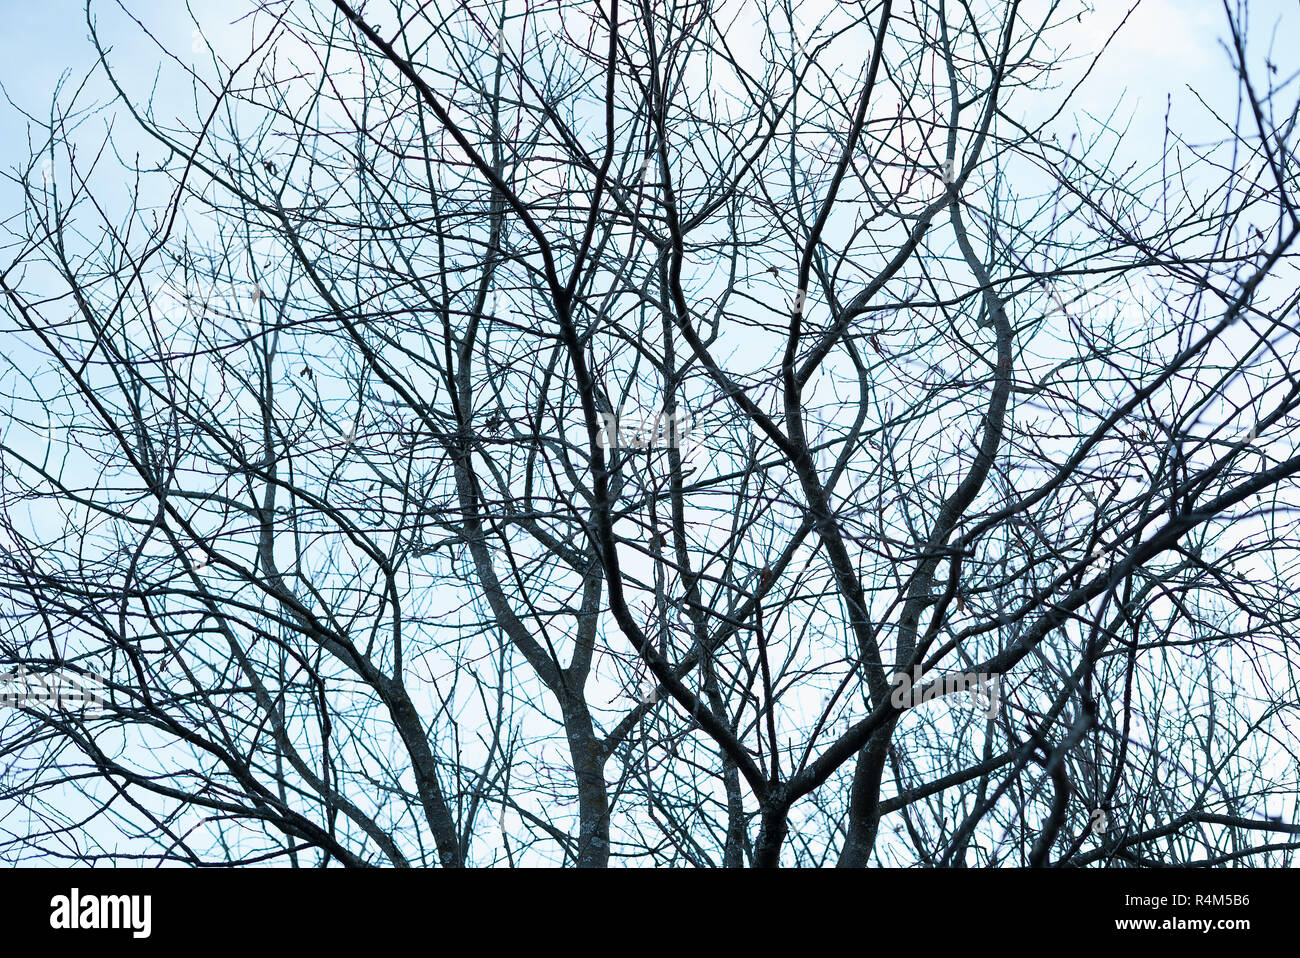 De nombreux nue, sans feuilles sombres des branches d'arbre d'automne faire une silhouette graphique brindilles contre le ciel bleu froid - Concept de Spooky Halloween Banque D'Images